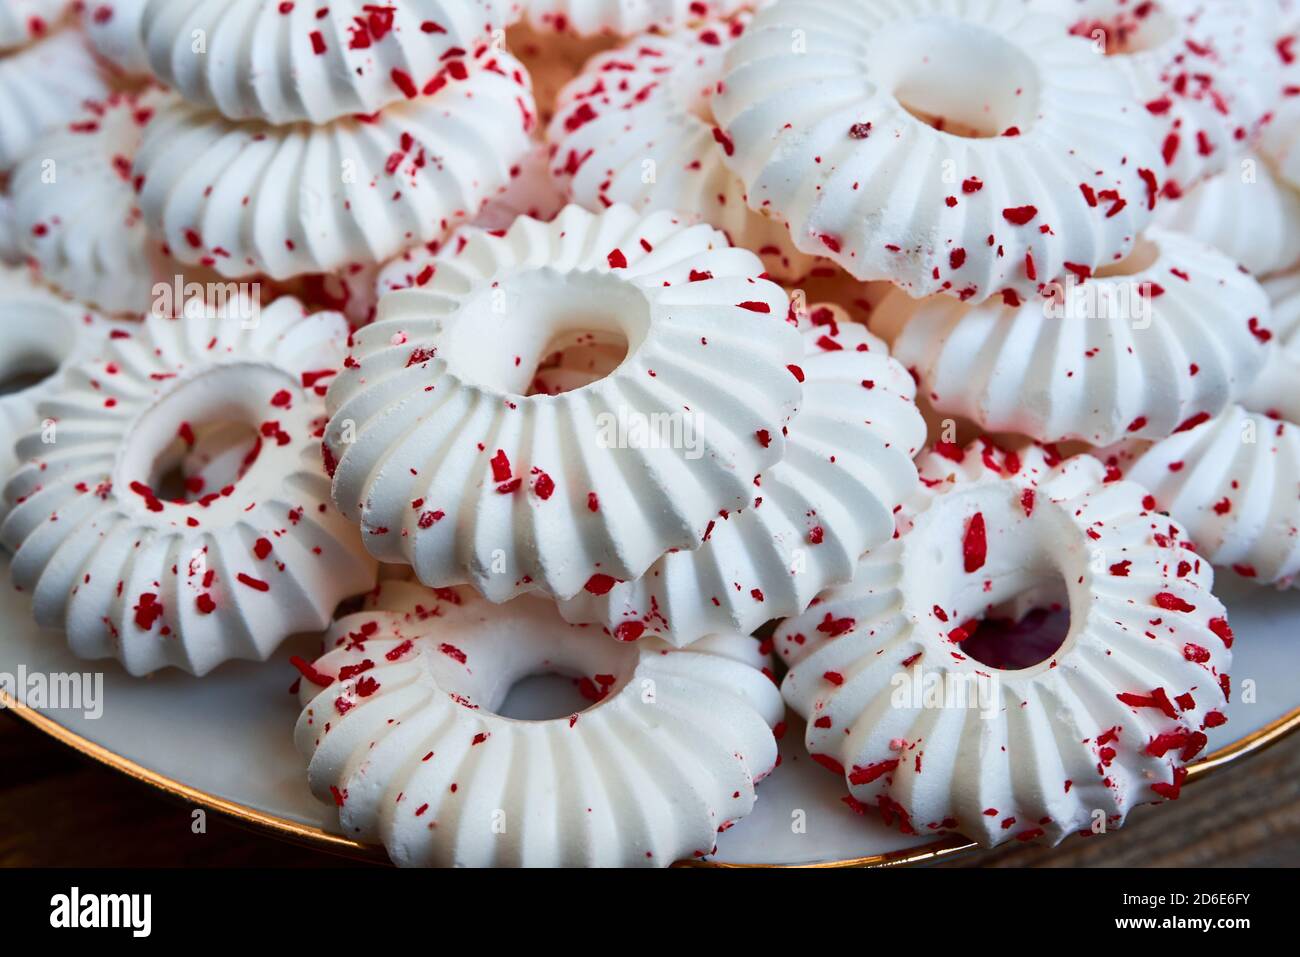 Fond de gâteaux de meringue blancs avec des miettes rouges Banque D'Images